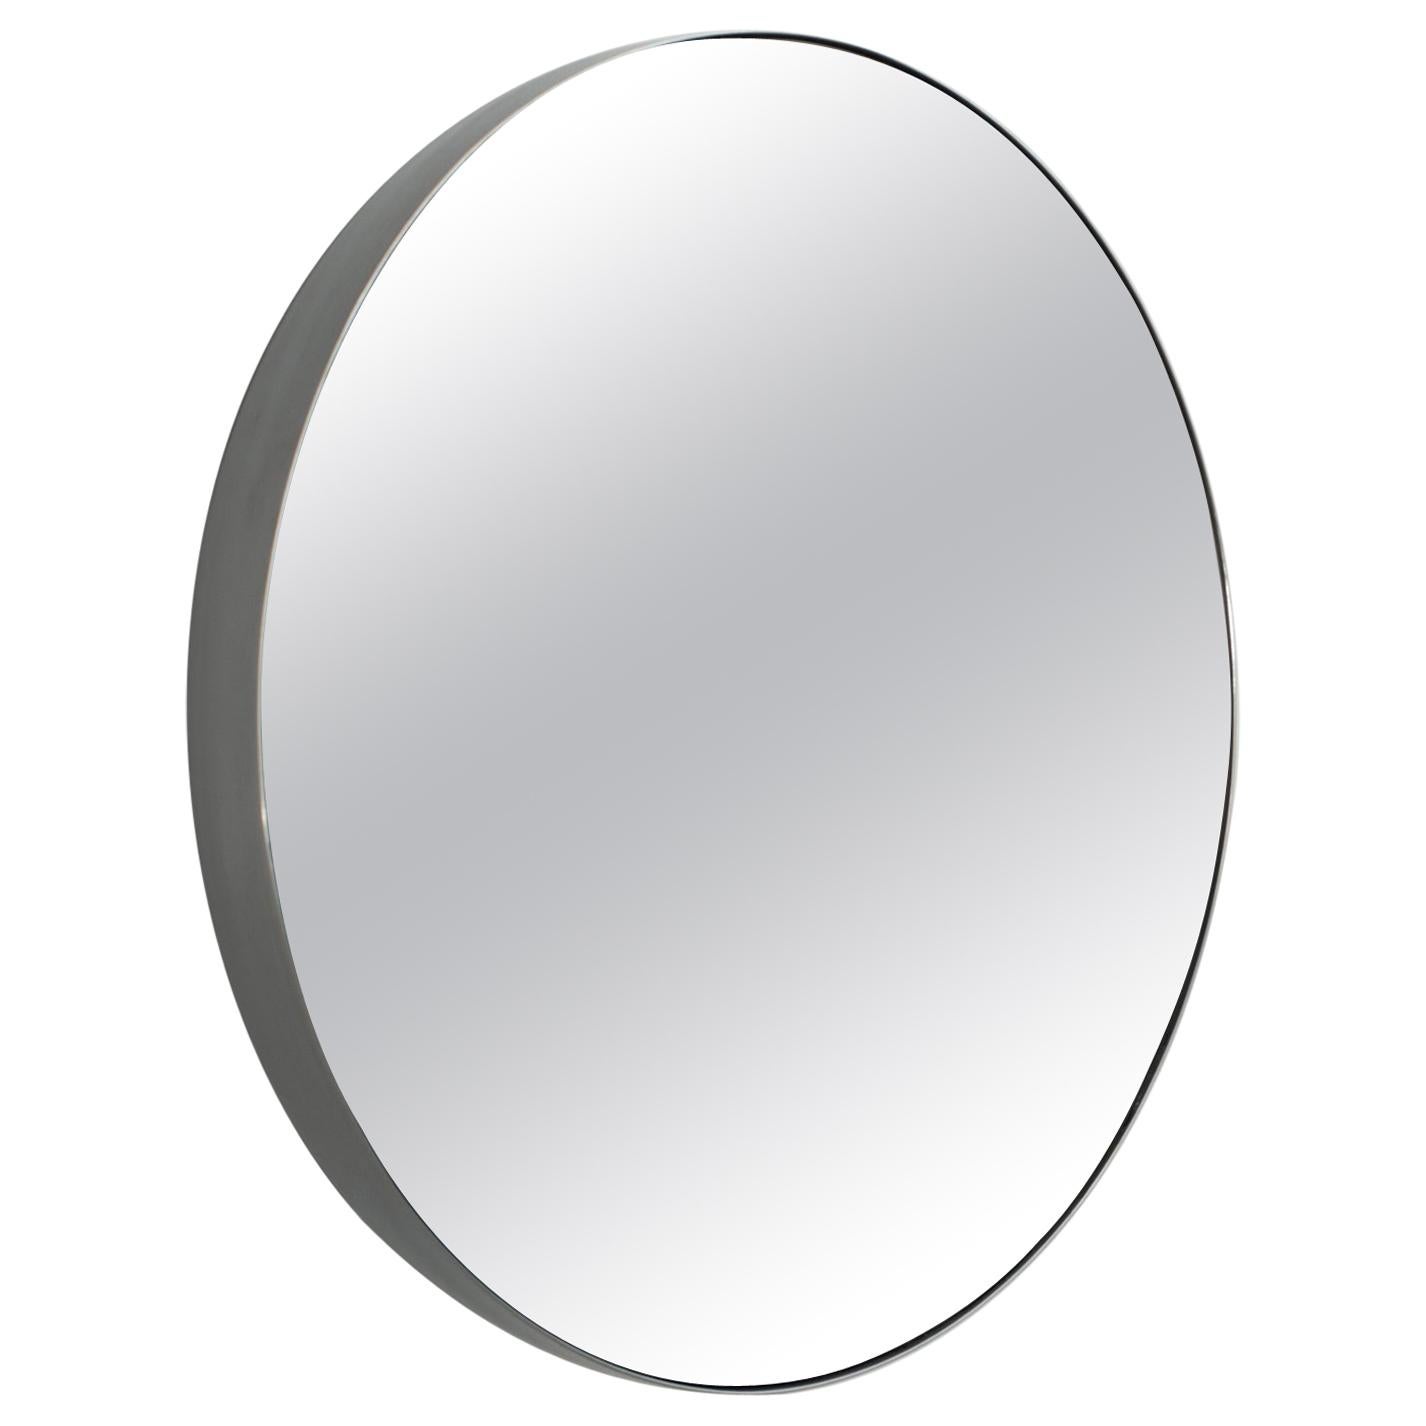 Concave Convex Mirror Contemporary Mirror in Steel and Mirror